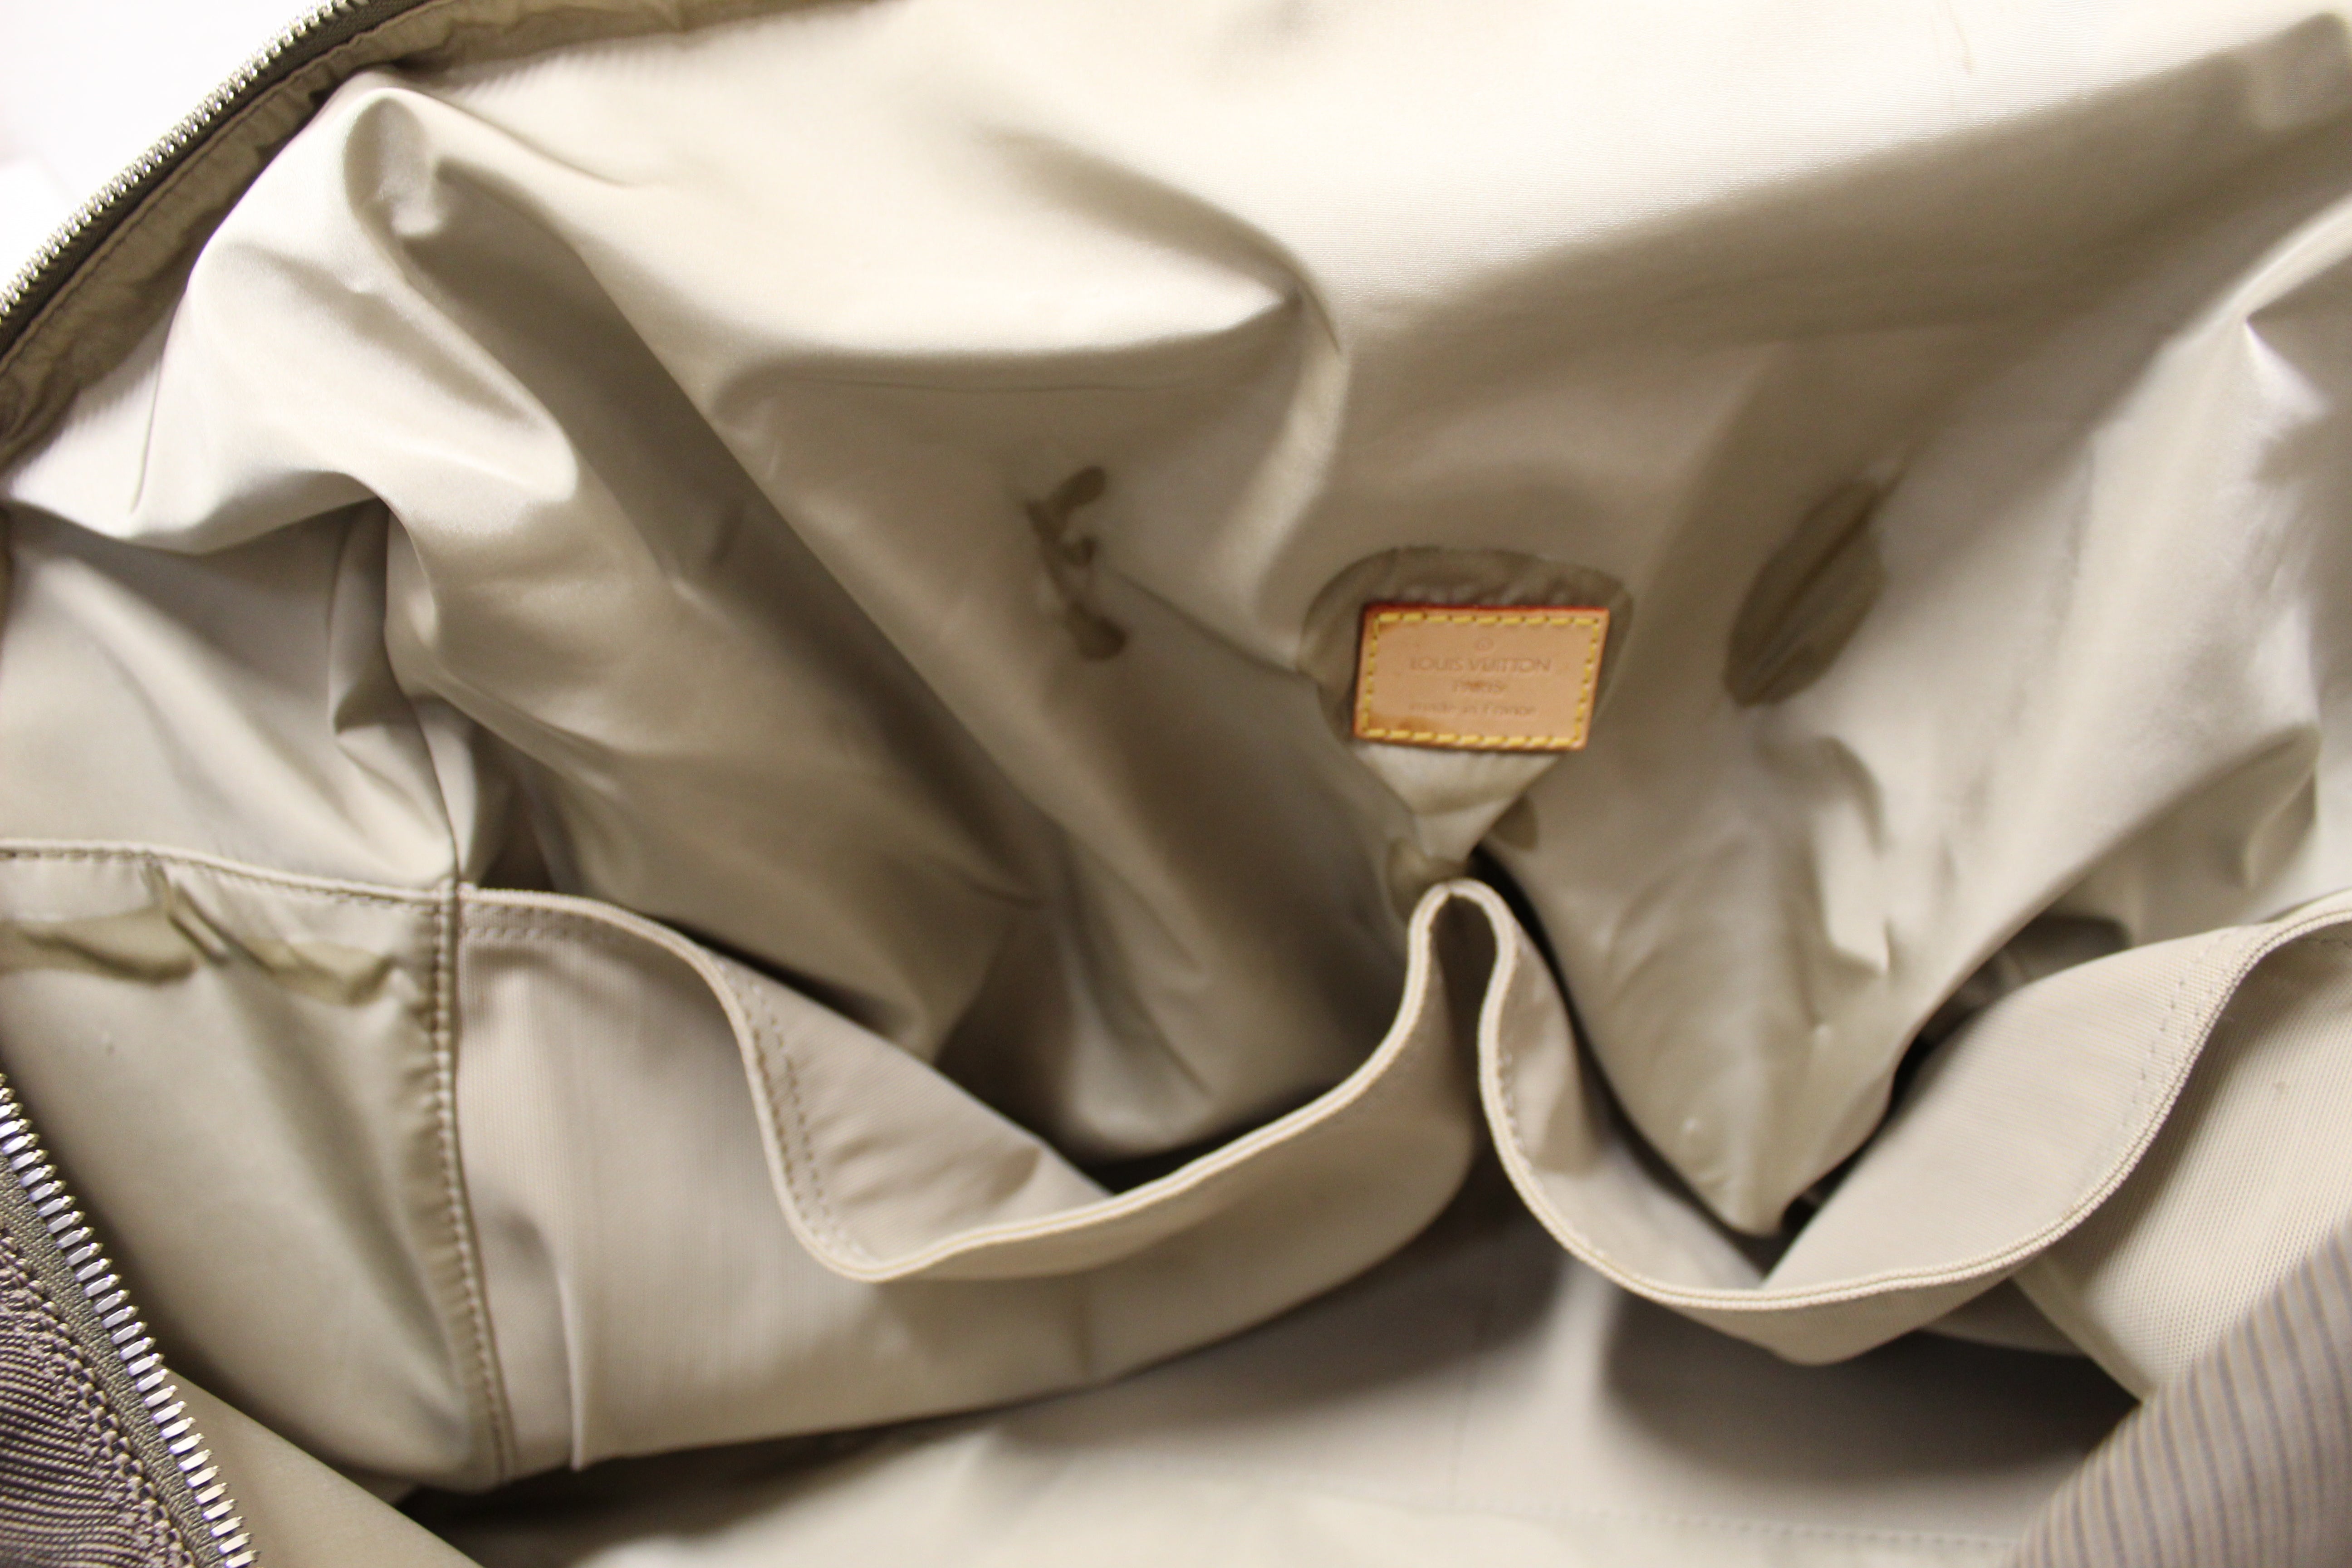 Authentic Louis Vuitton Damier Geant Souverain Travel Duffle Bag